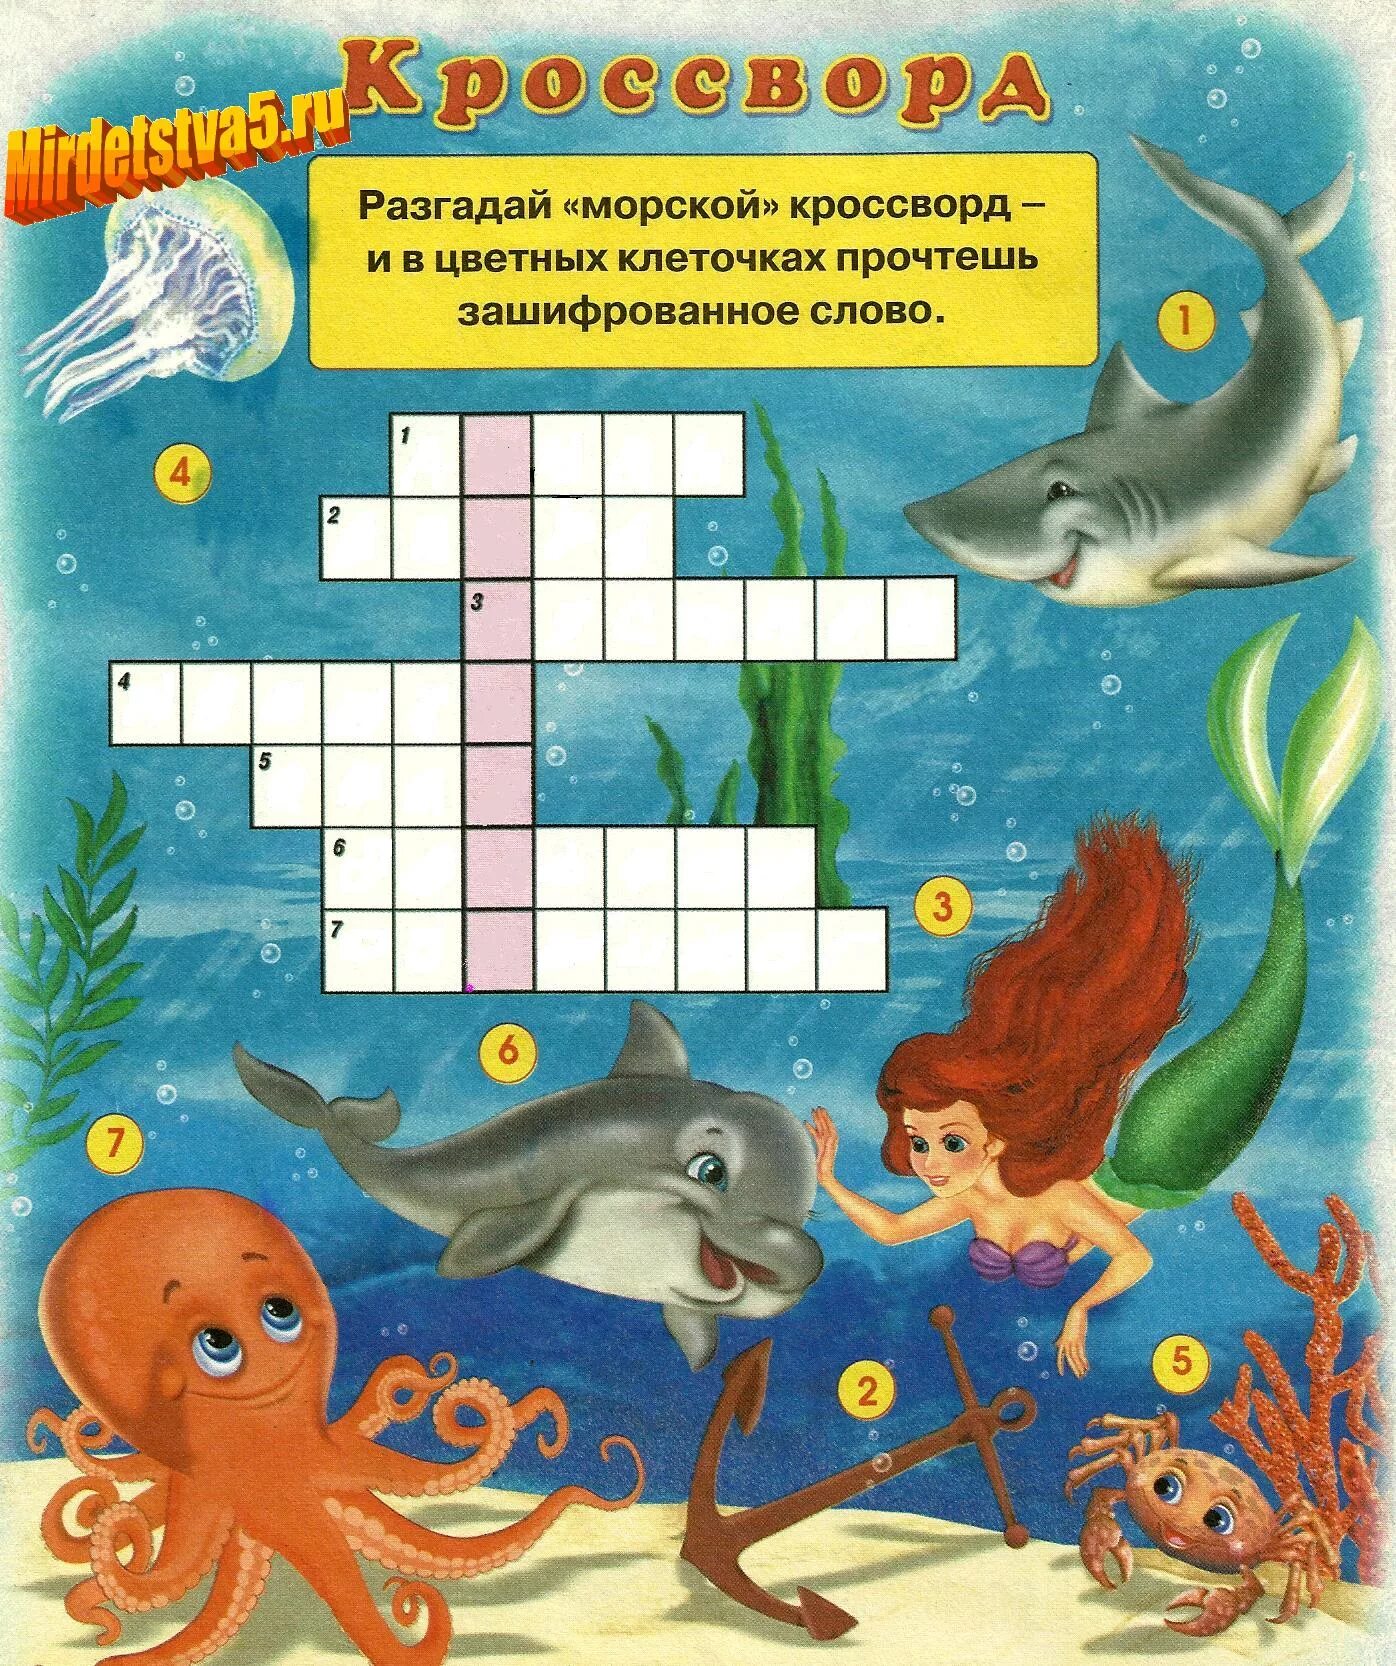 Аквариумная рыбка 6 сканворд. Кроссворды для детей. Головоломки кроссворды для детей. Морской кроссворд. Кроссворд на морскую тему для детей.